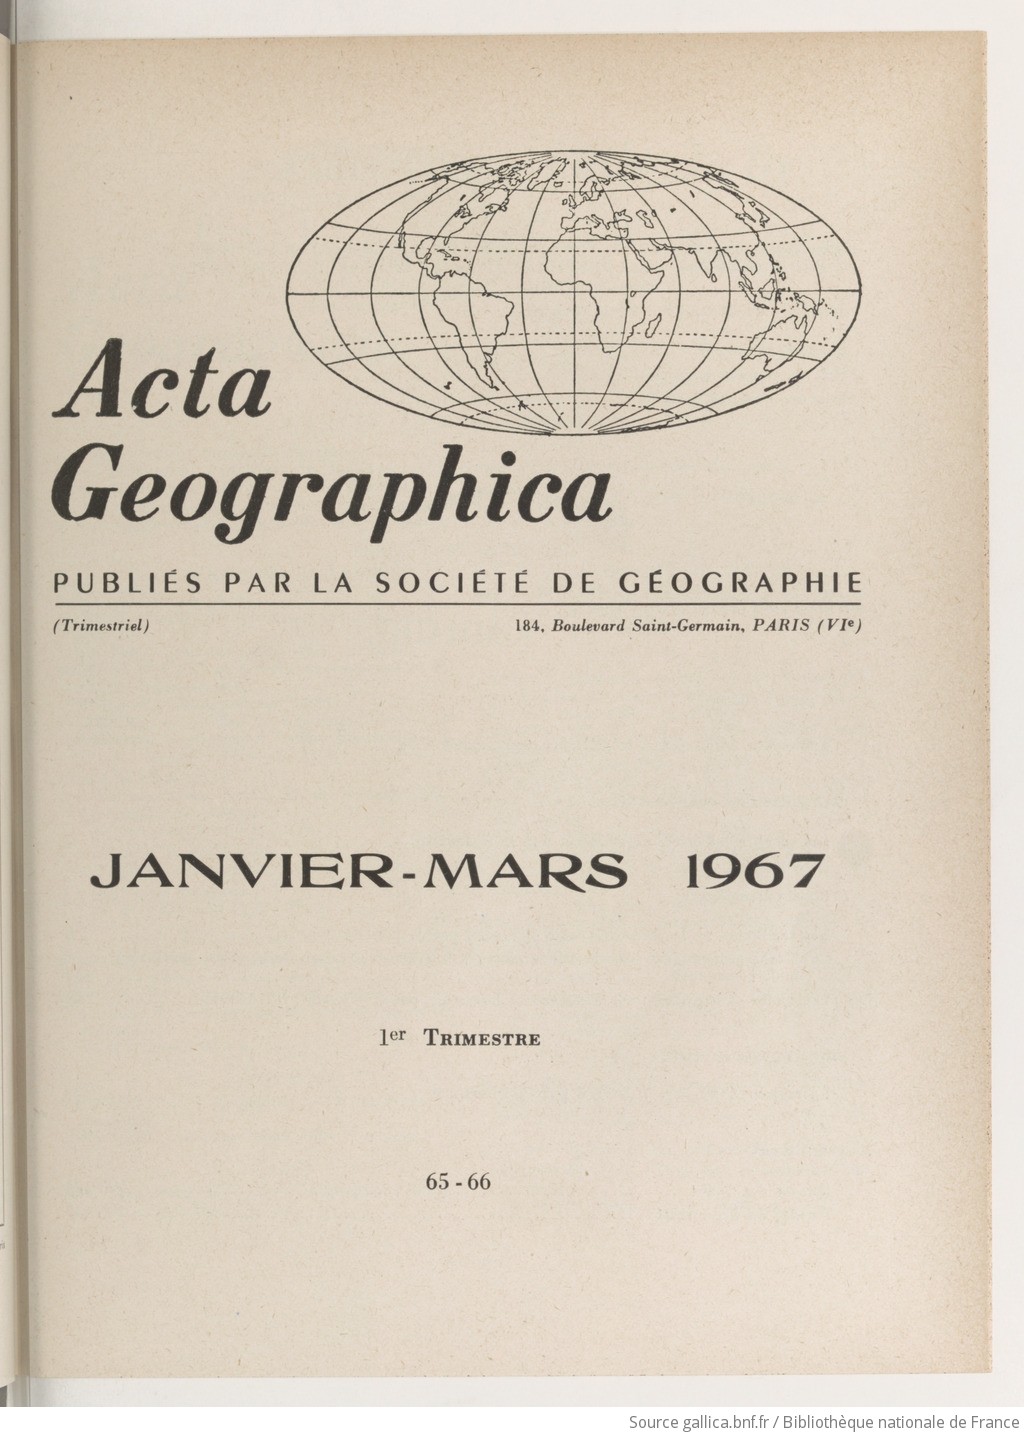 Acta geographica : comptes rendus de la Société de géographie de Paris